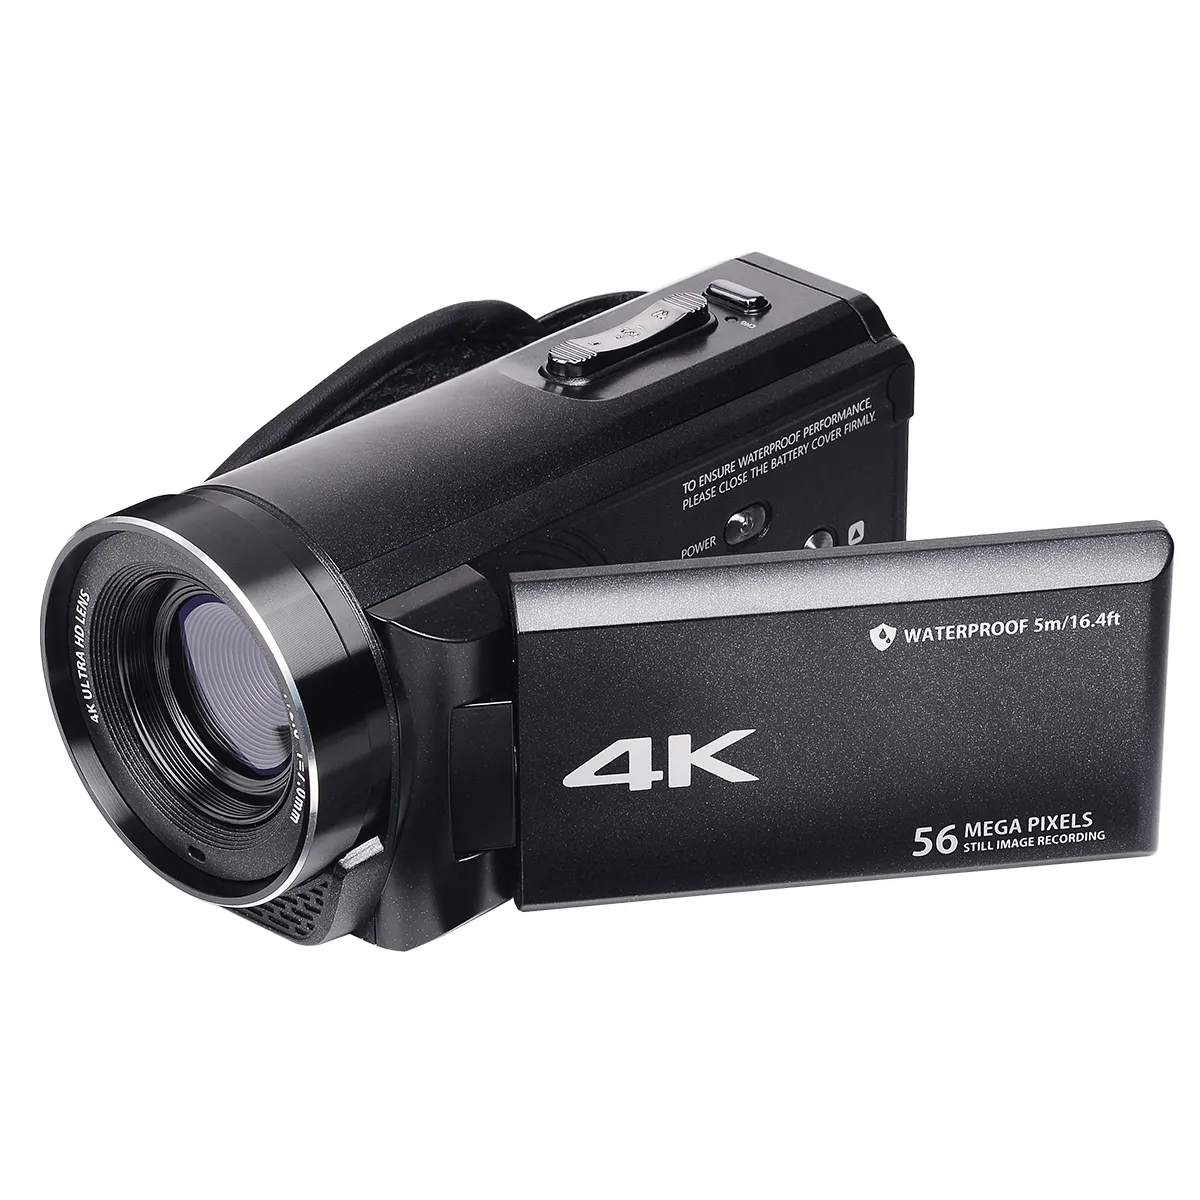 Kamera Perekam Video 4K, alat merekam tahan air 5M/16,4 kaki Ultra HD 56MP 18X Zoom Digital untuk Youtube